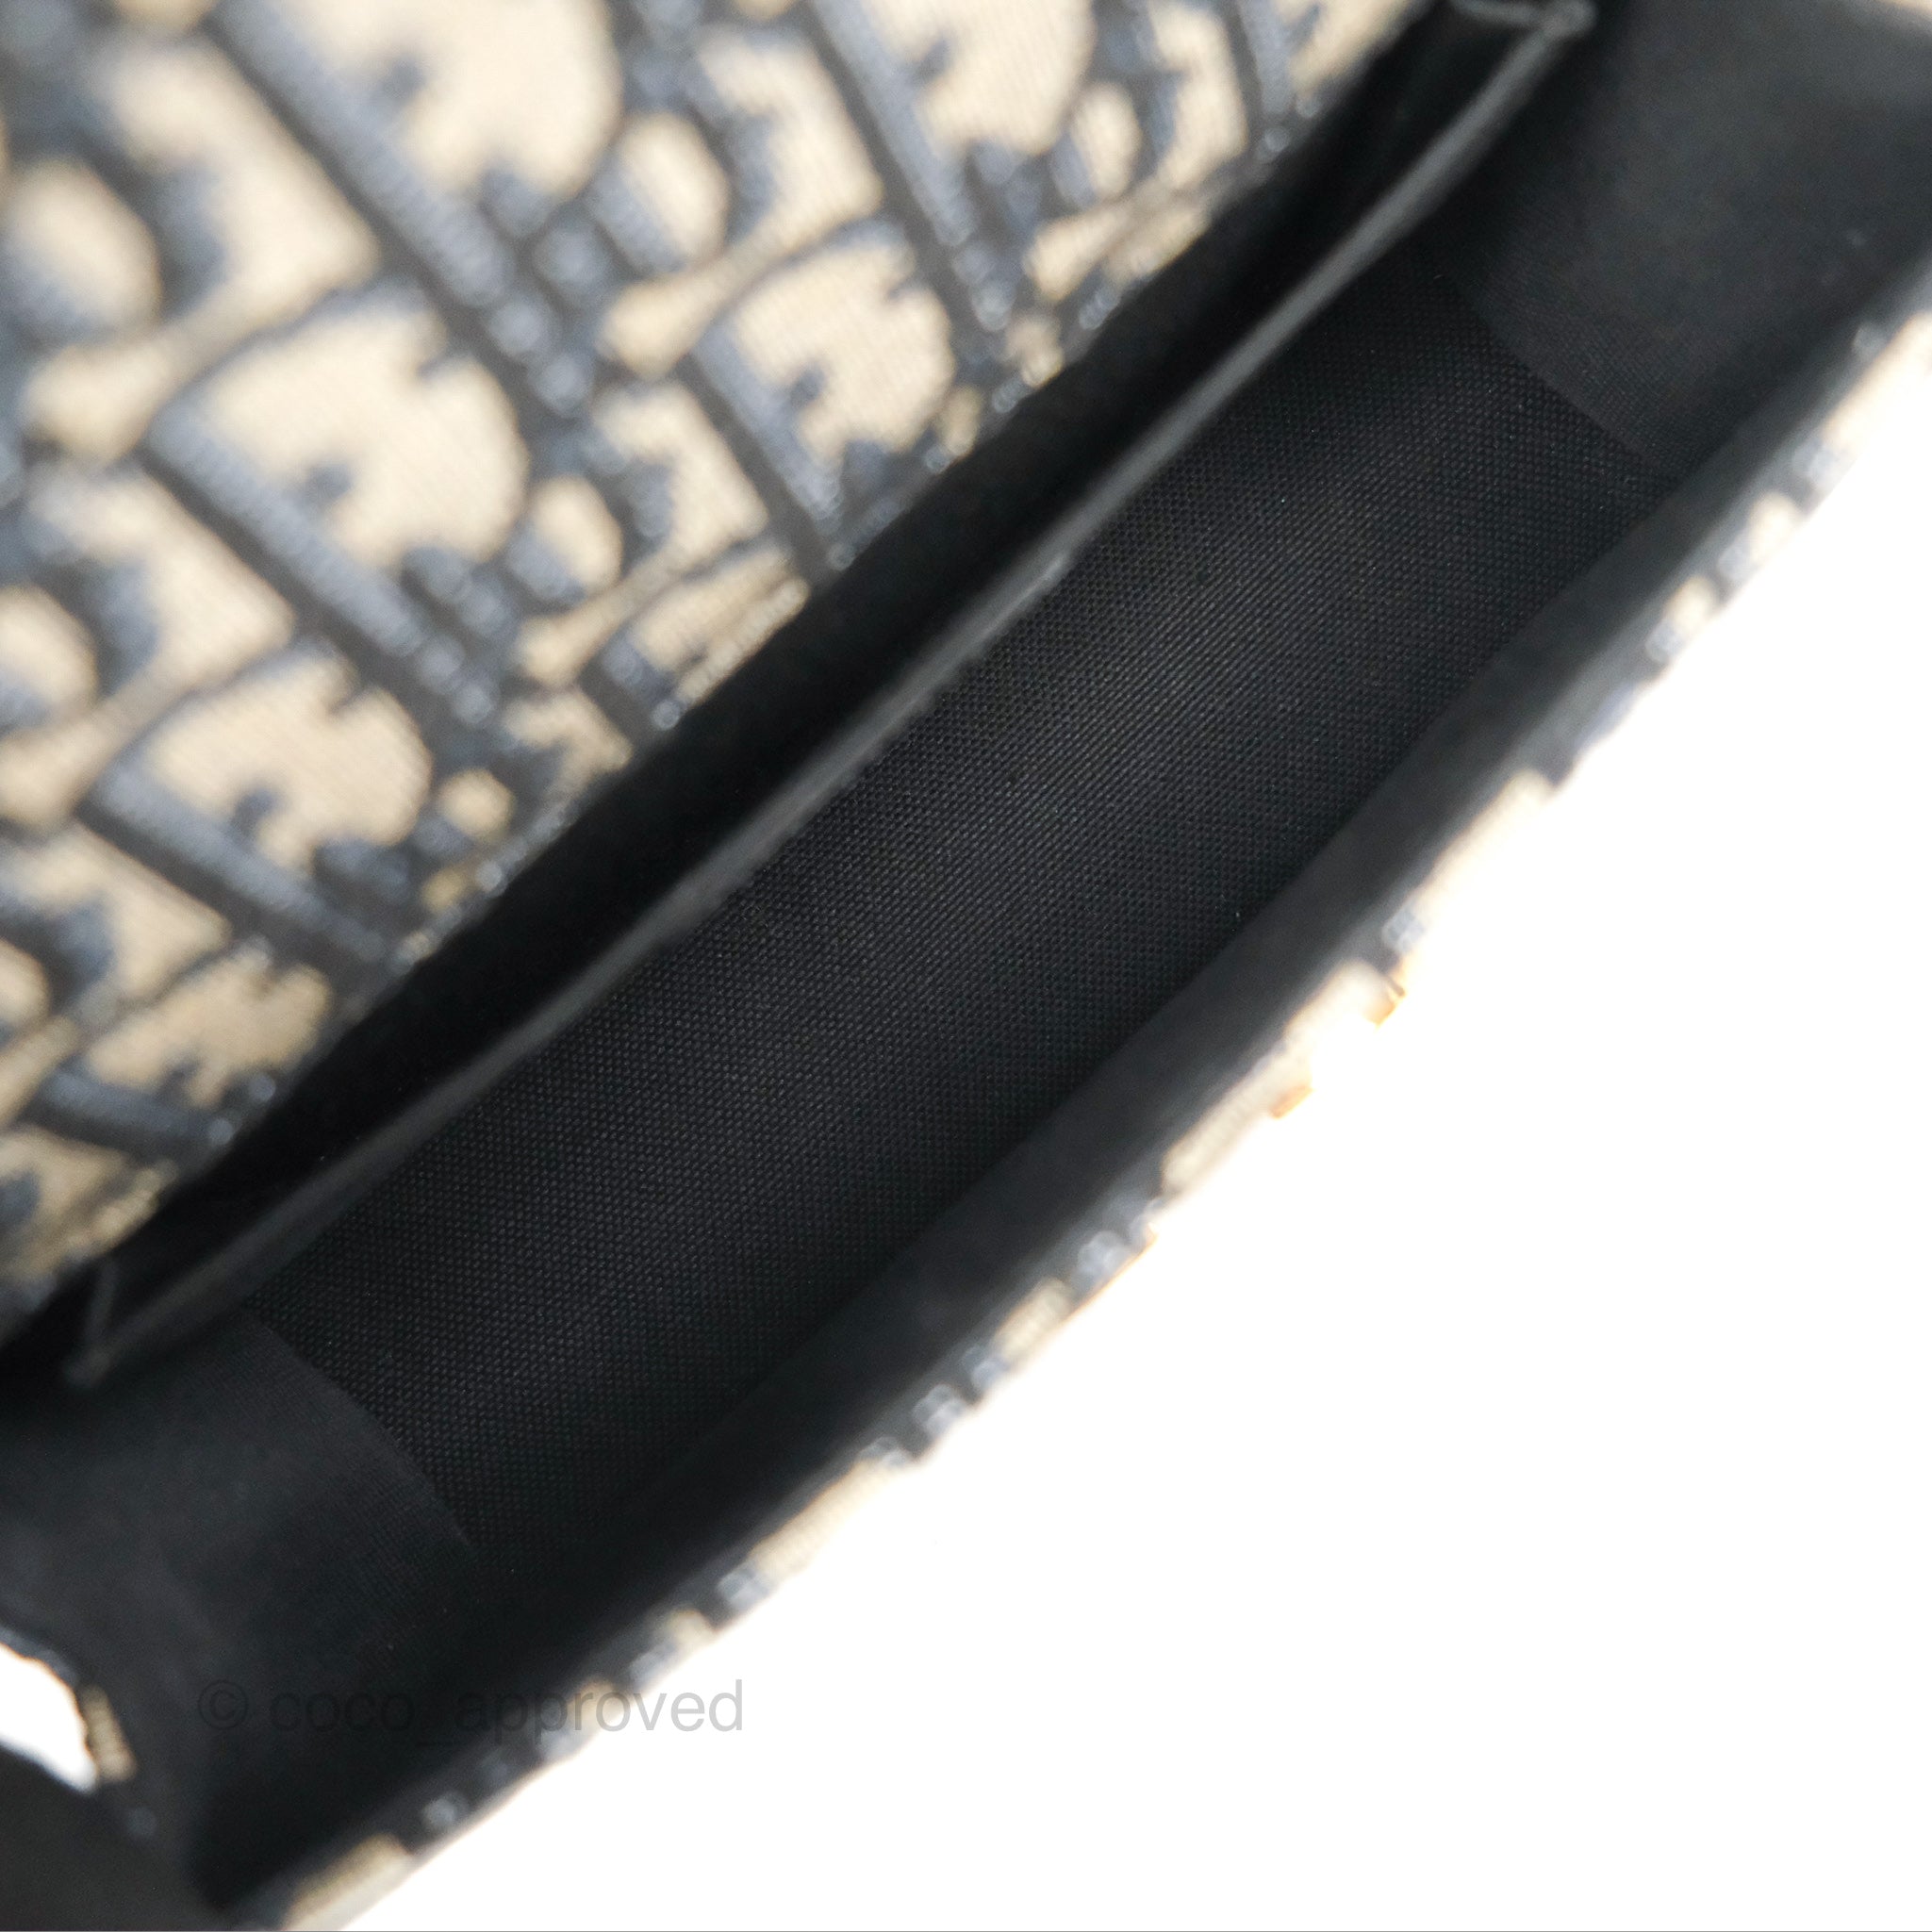 Dior 30 Montaigne Chain Blue bag - BNWT - RRP$ 3,800 USD